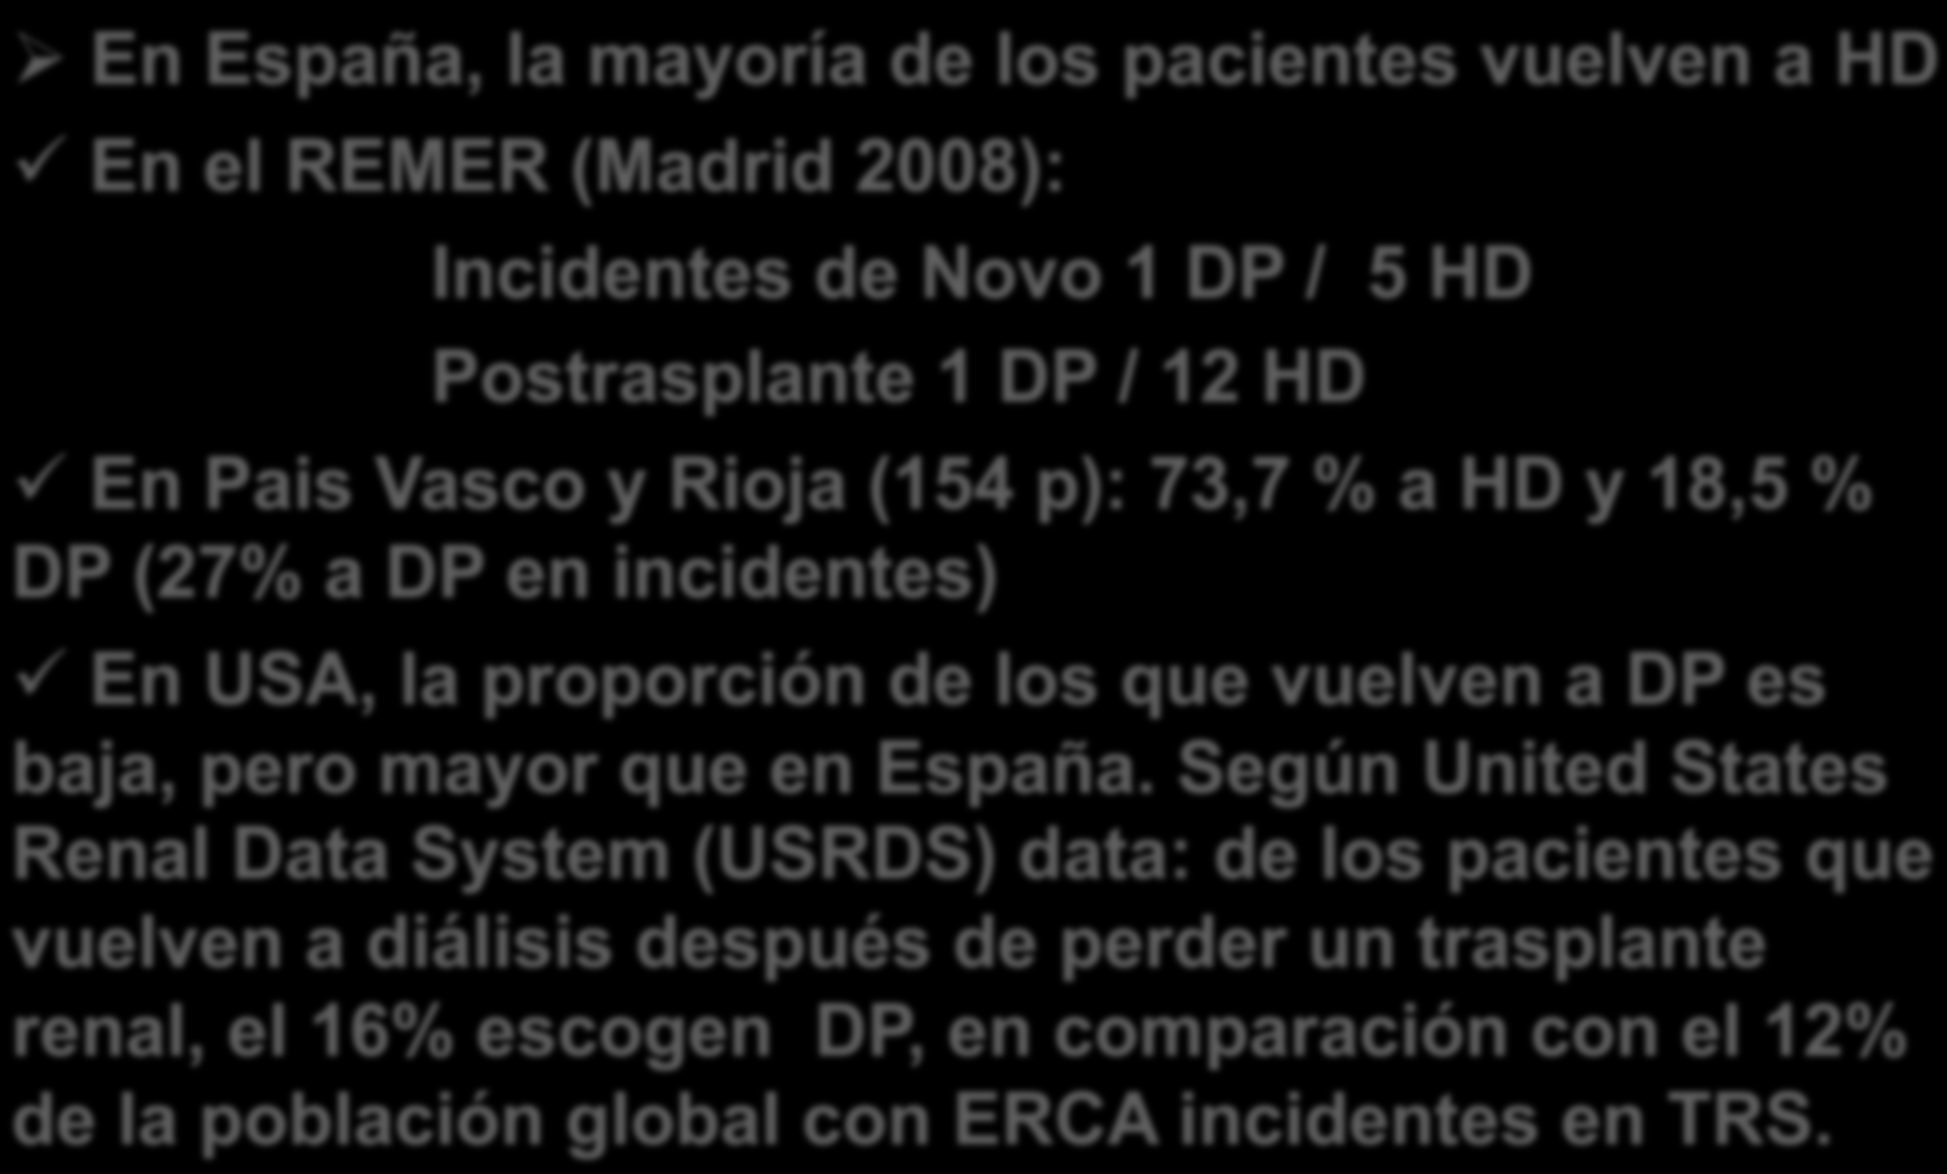 Datos epidemiológicos de la vuelta a diálisis después de un trasplante renal fallido: HD/DP En España, la mayoría de los pacientes vuelven a HD En el REMER (Madrid 2008): Incidentes de Novo 1 DP / 5